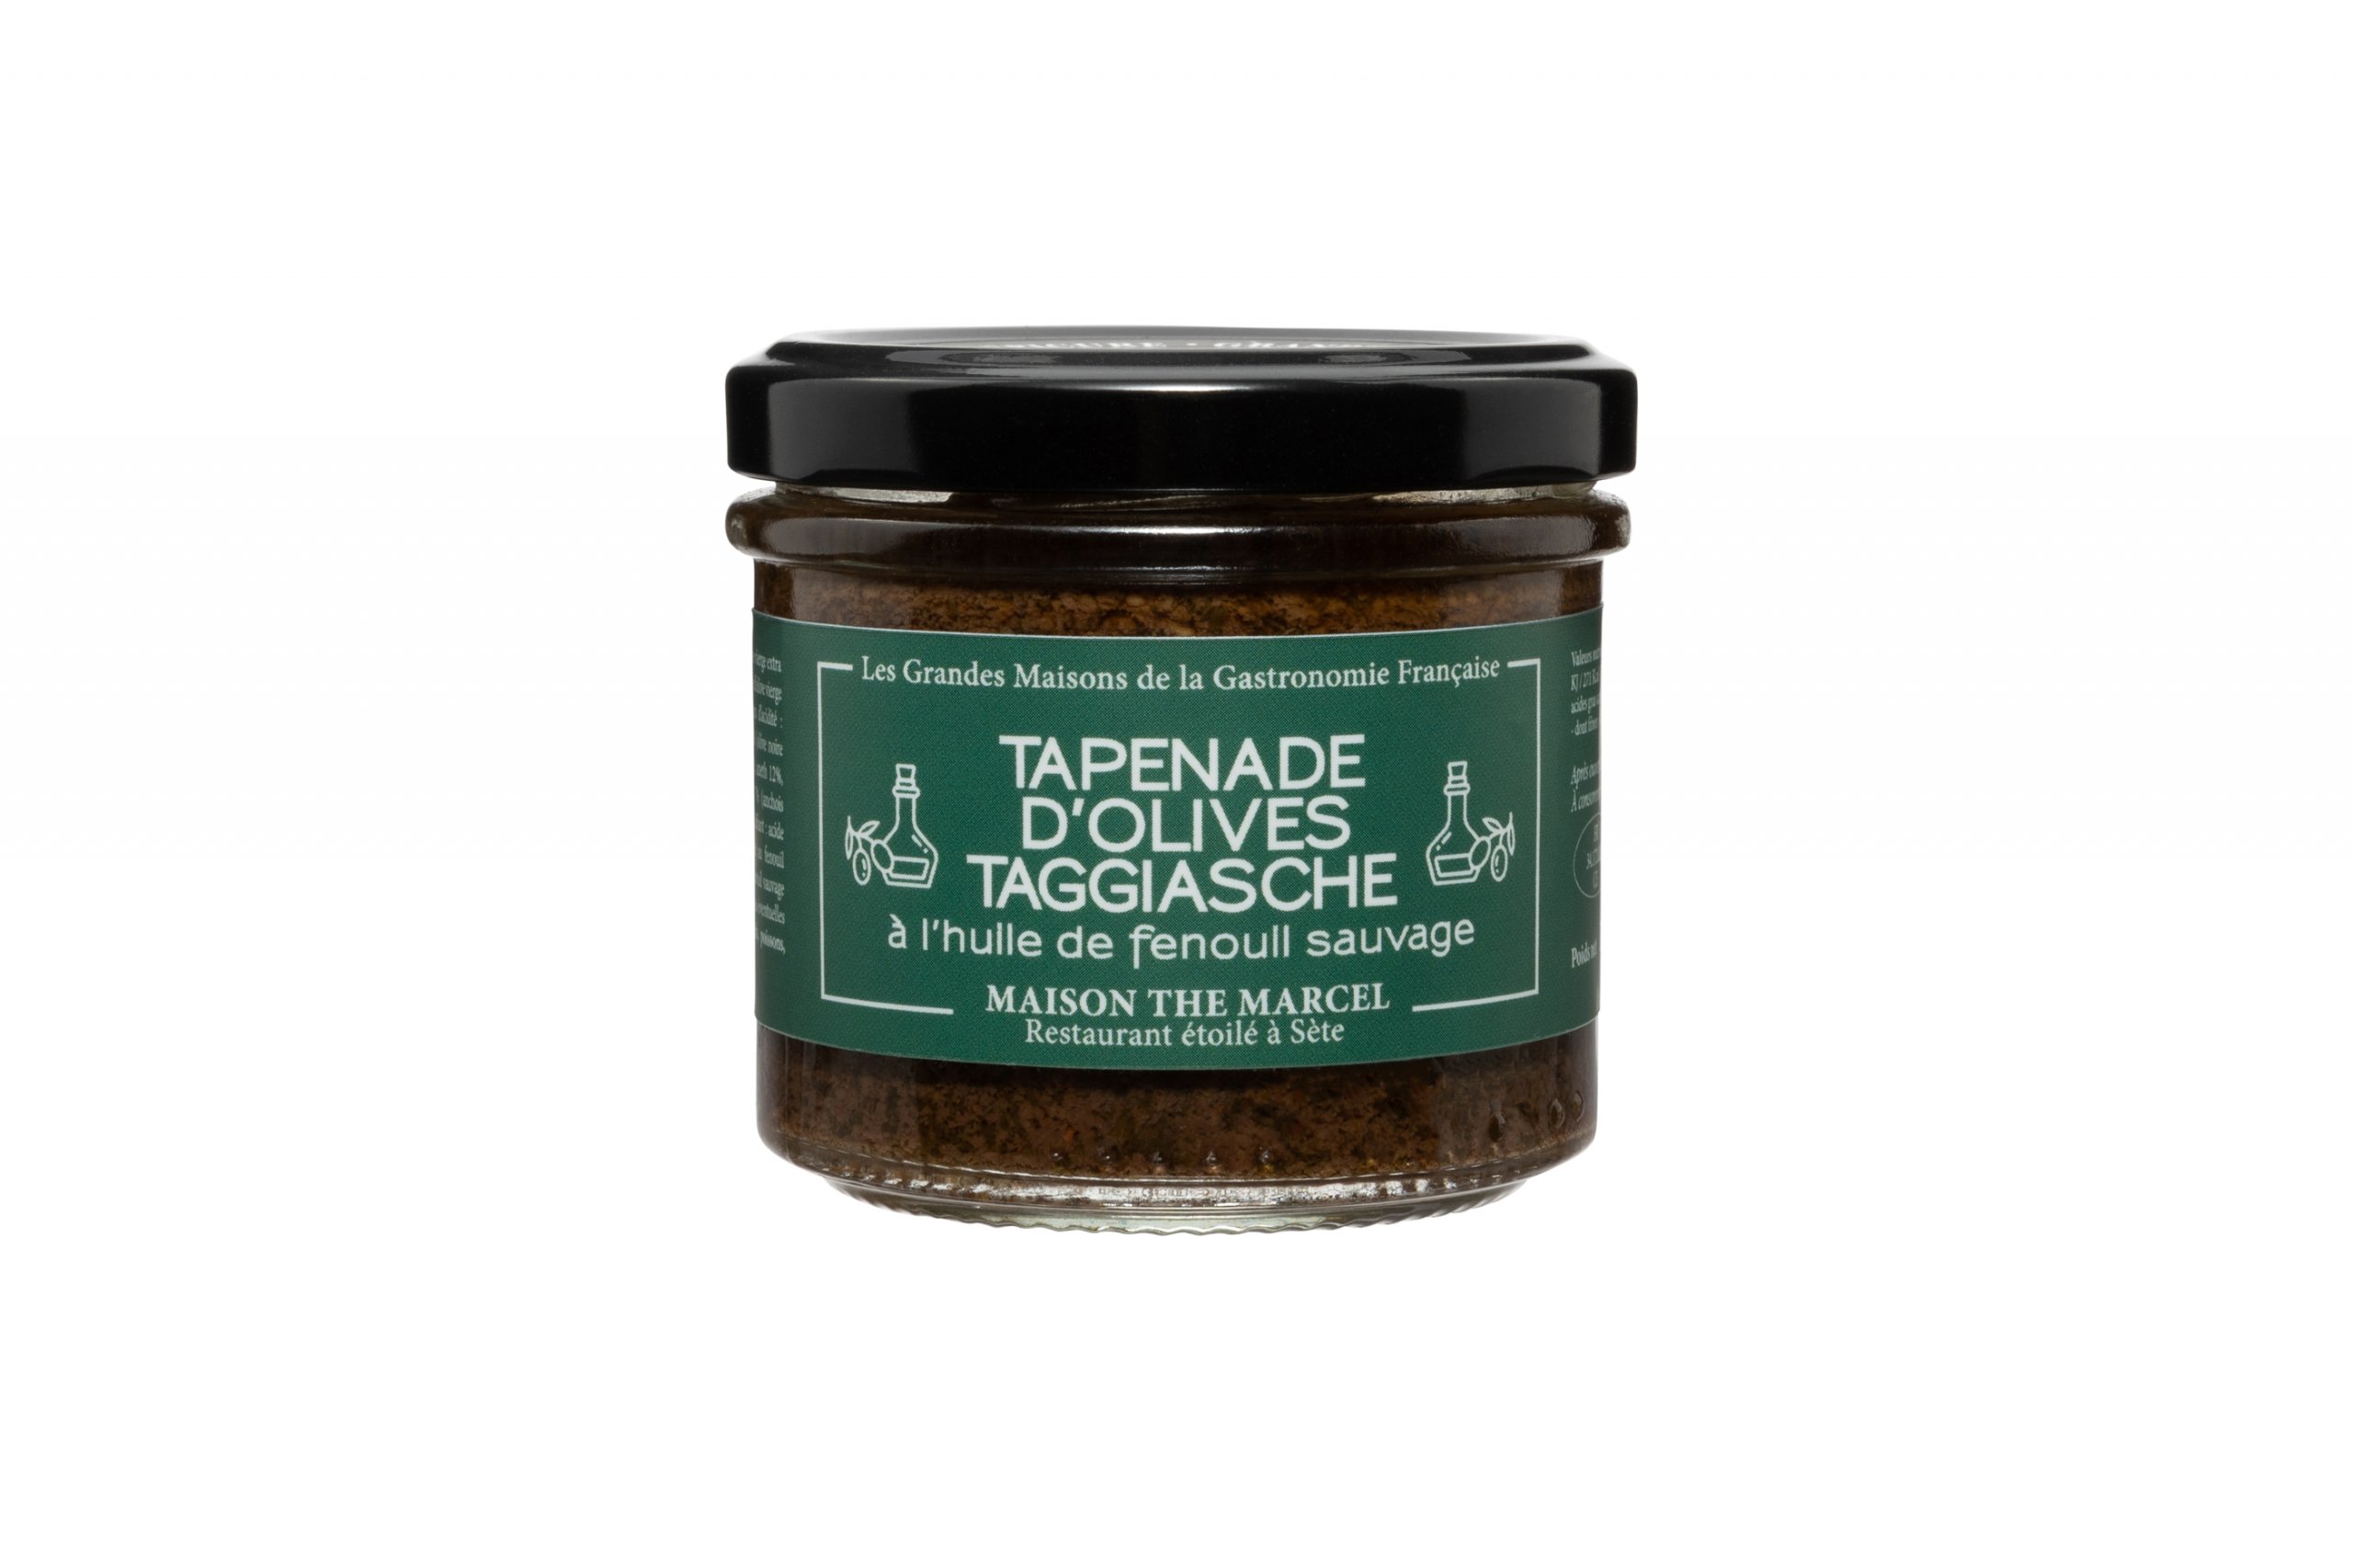 Tapenade d'olives Taggiasche à l'huile de fenouil sauvage